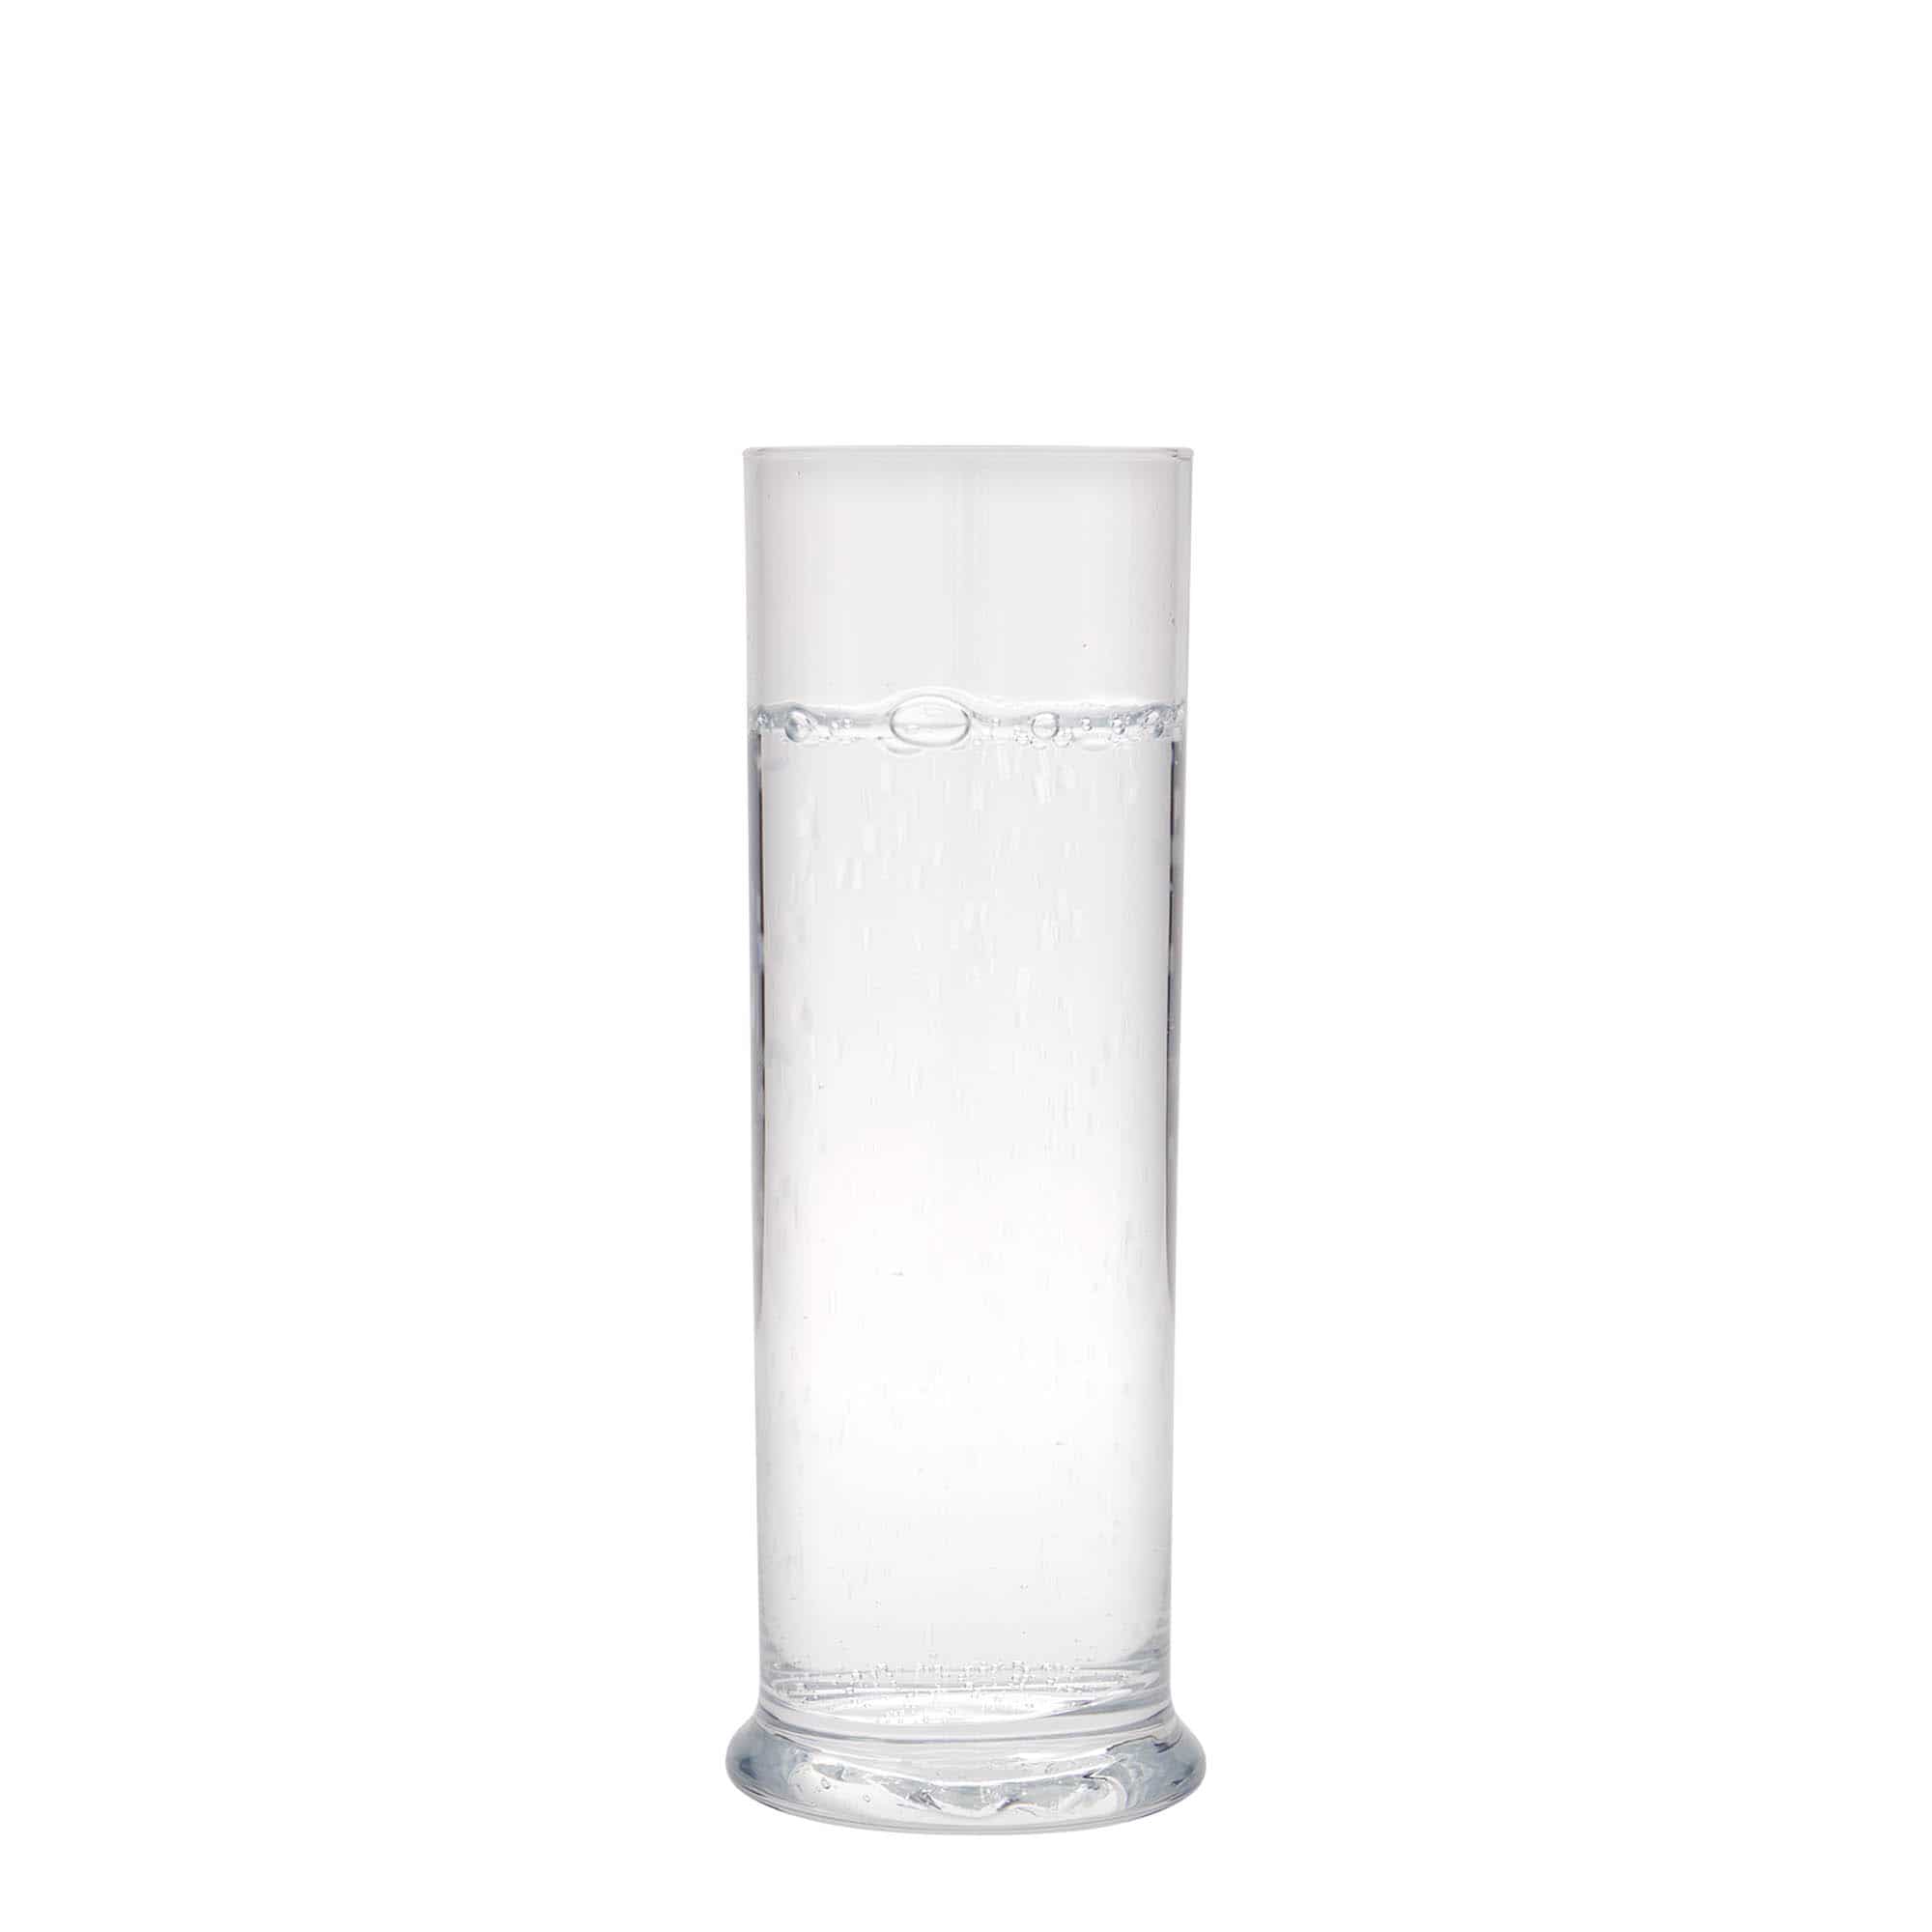 300 ml highball glass 'Club', glass